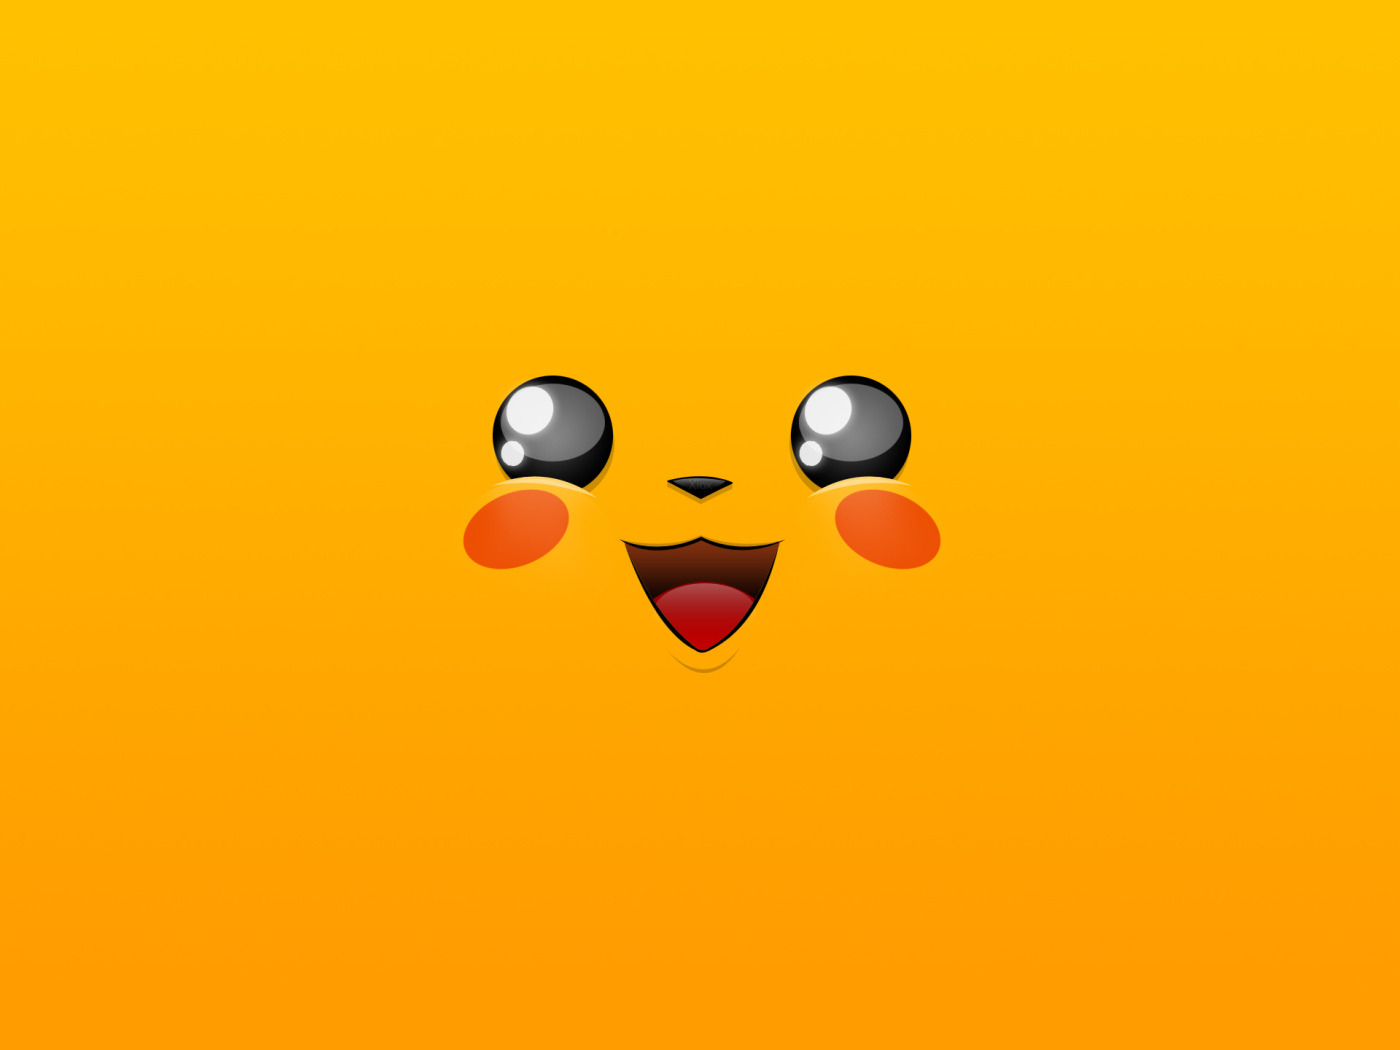 Лицо покемона Пикачу на желтом фоне